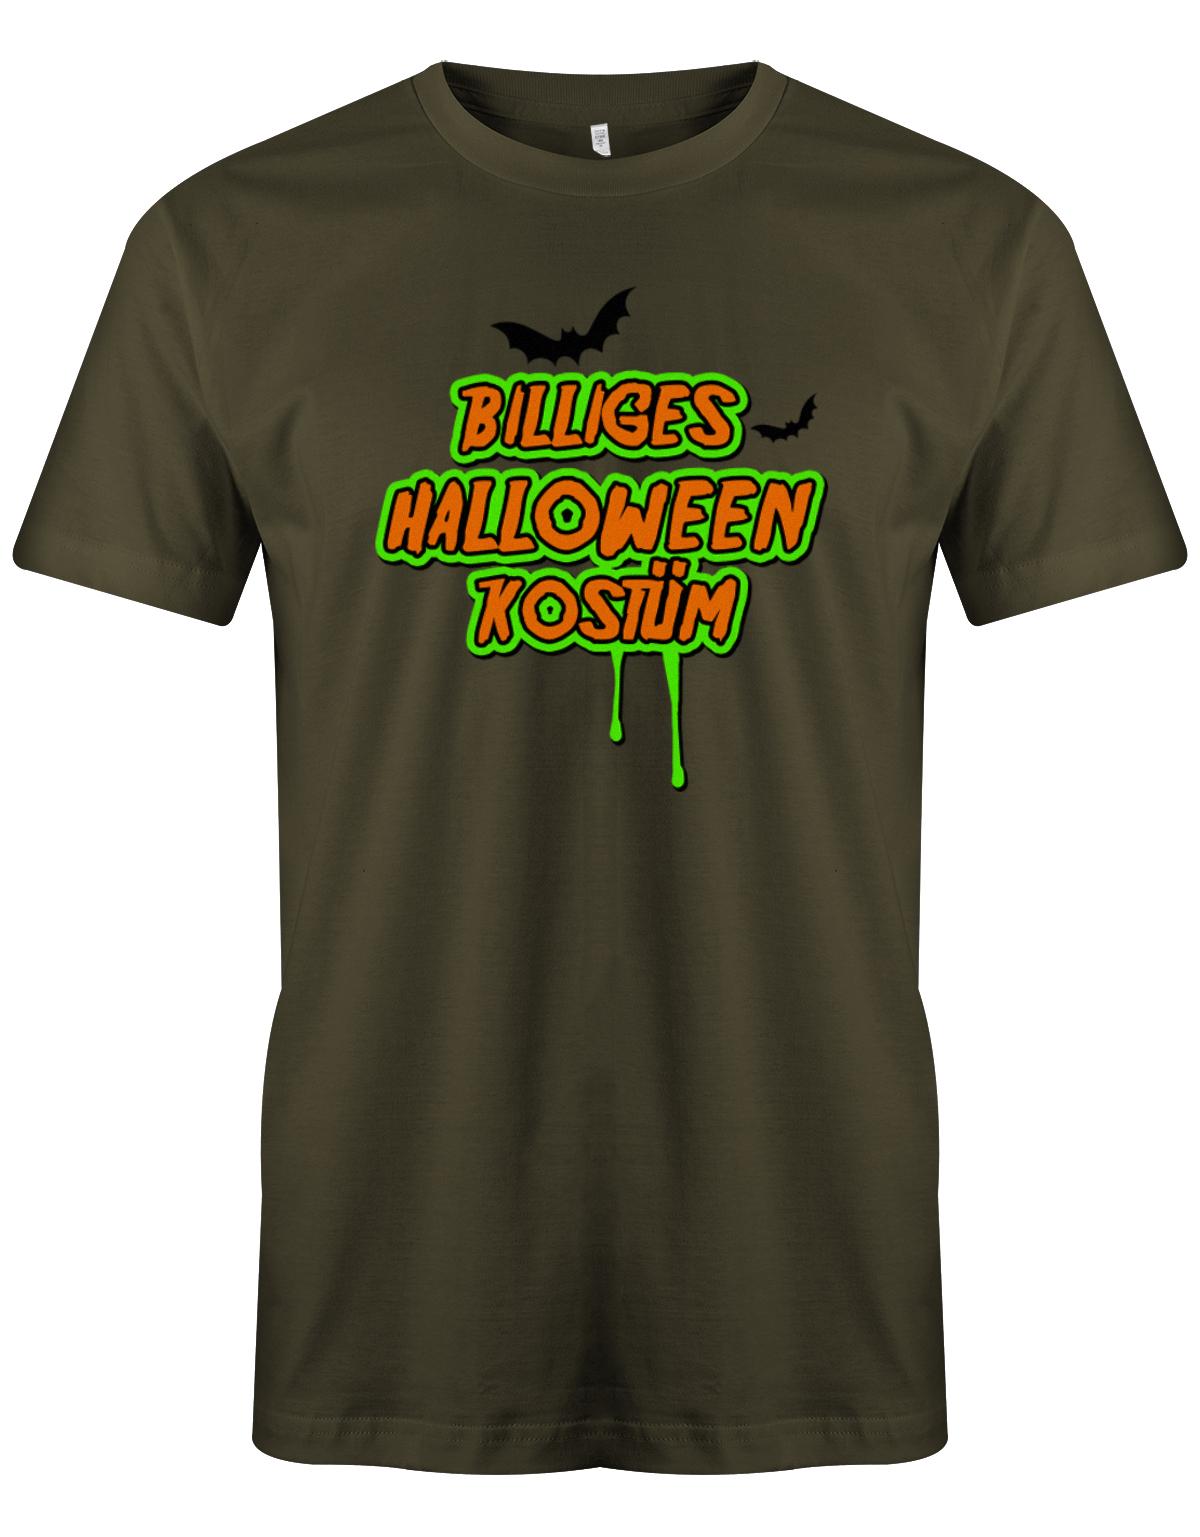 Billiges-Halloween-Kost-m-Shirt-Herren-Army